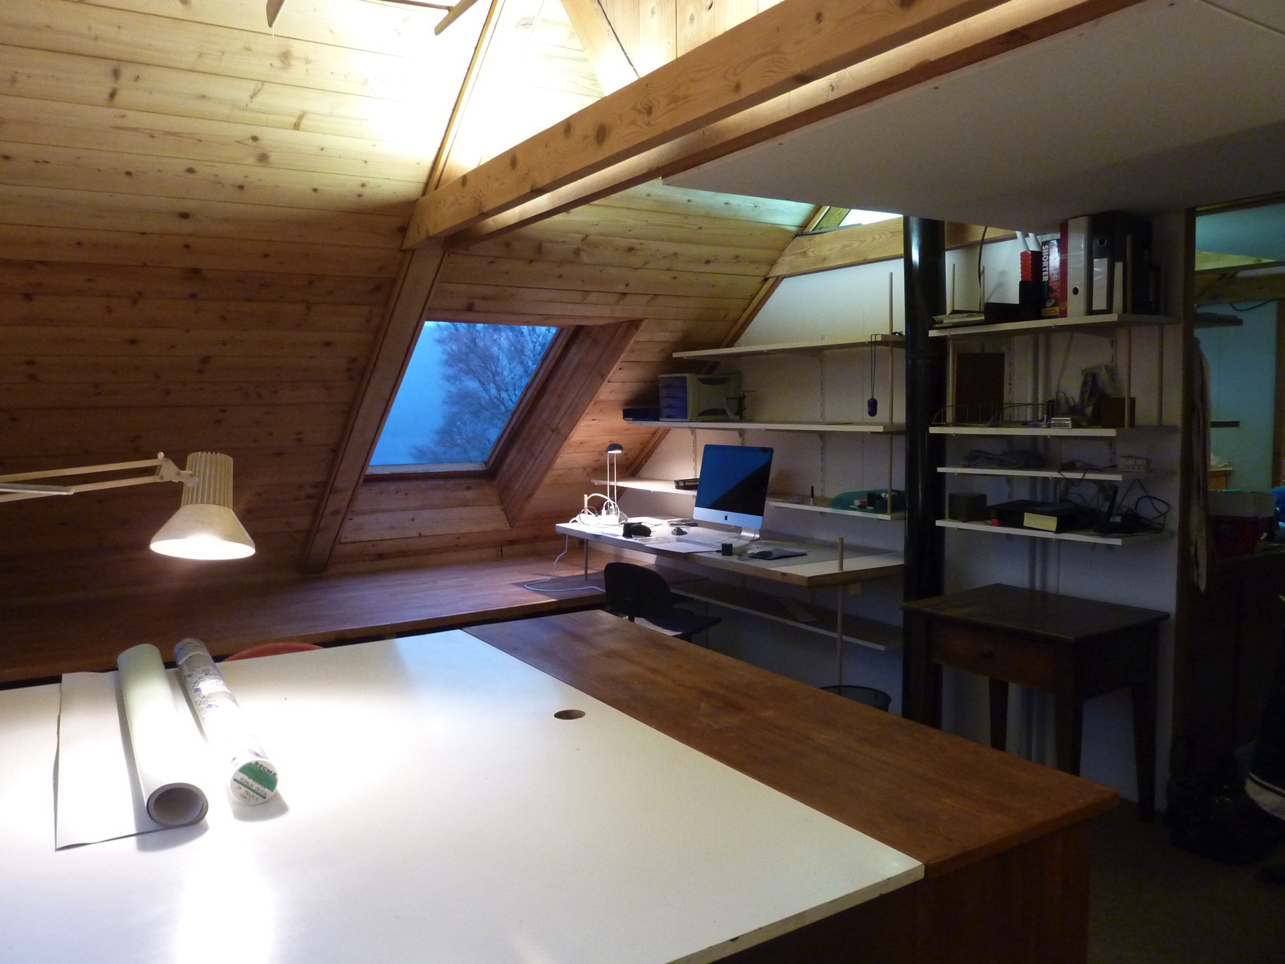 Table à dessin et bureau, espace de travail dans la maison d'architecte de Gérardmer.